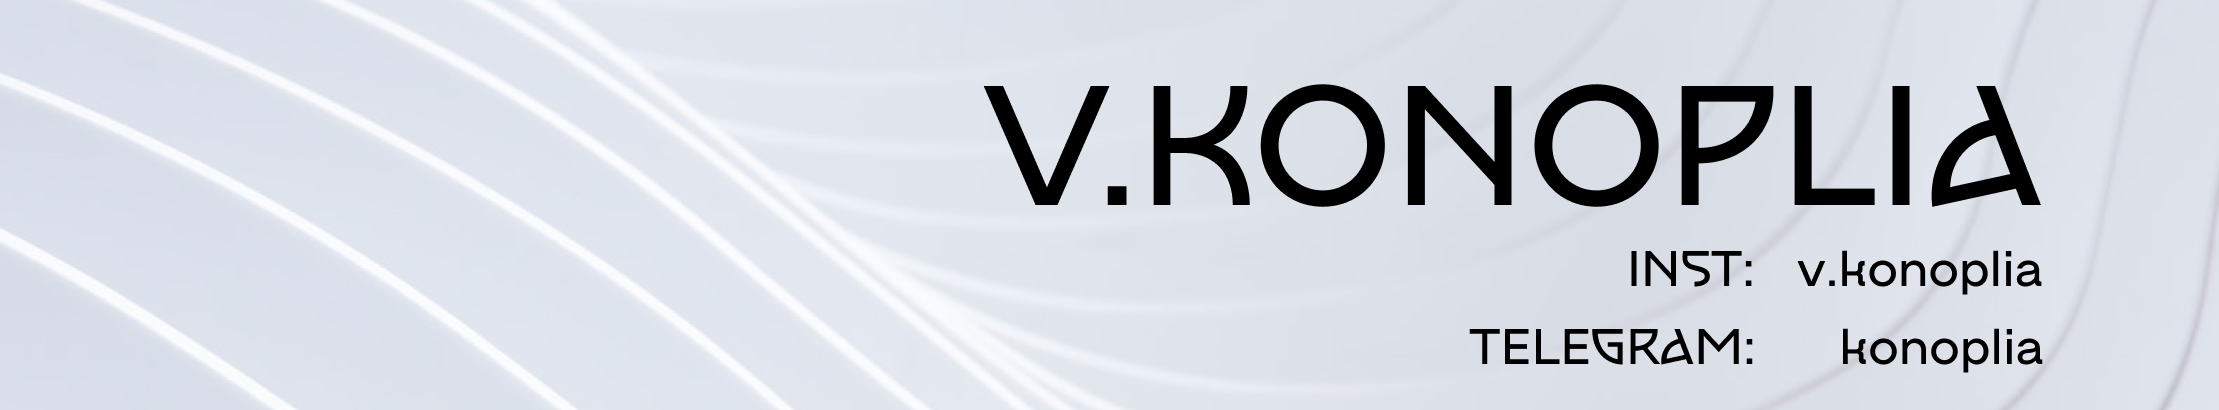 Vlada Konoplia's profile banner